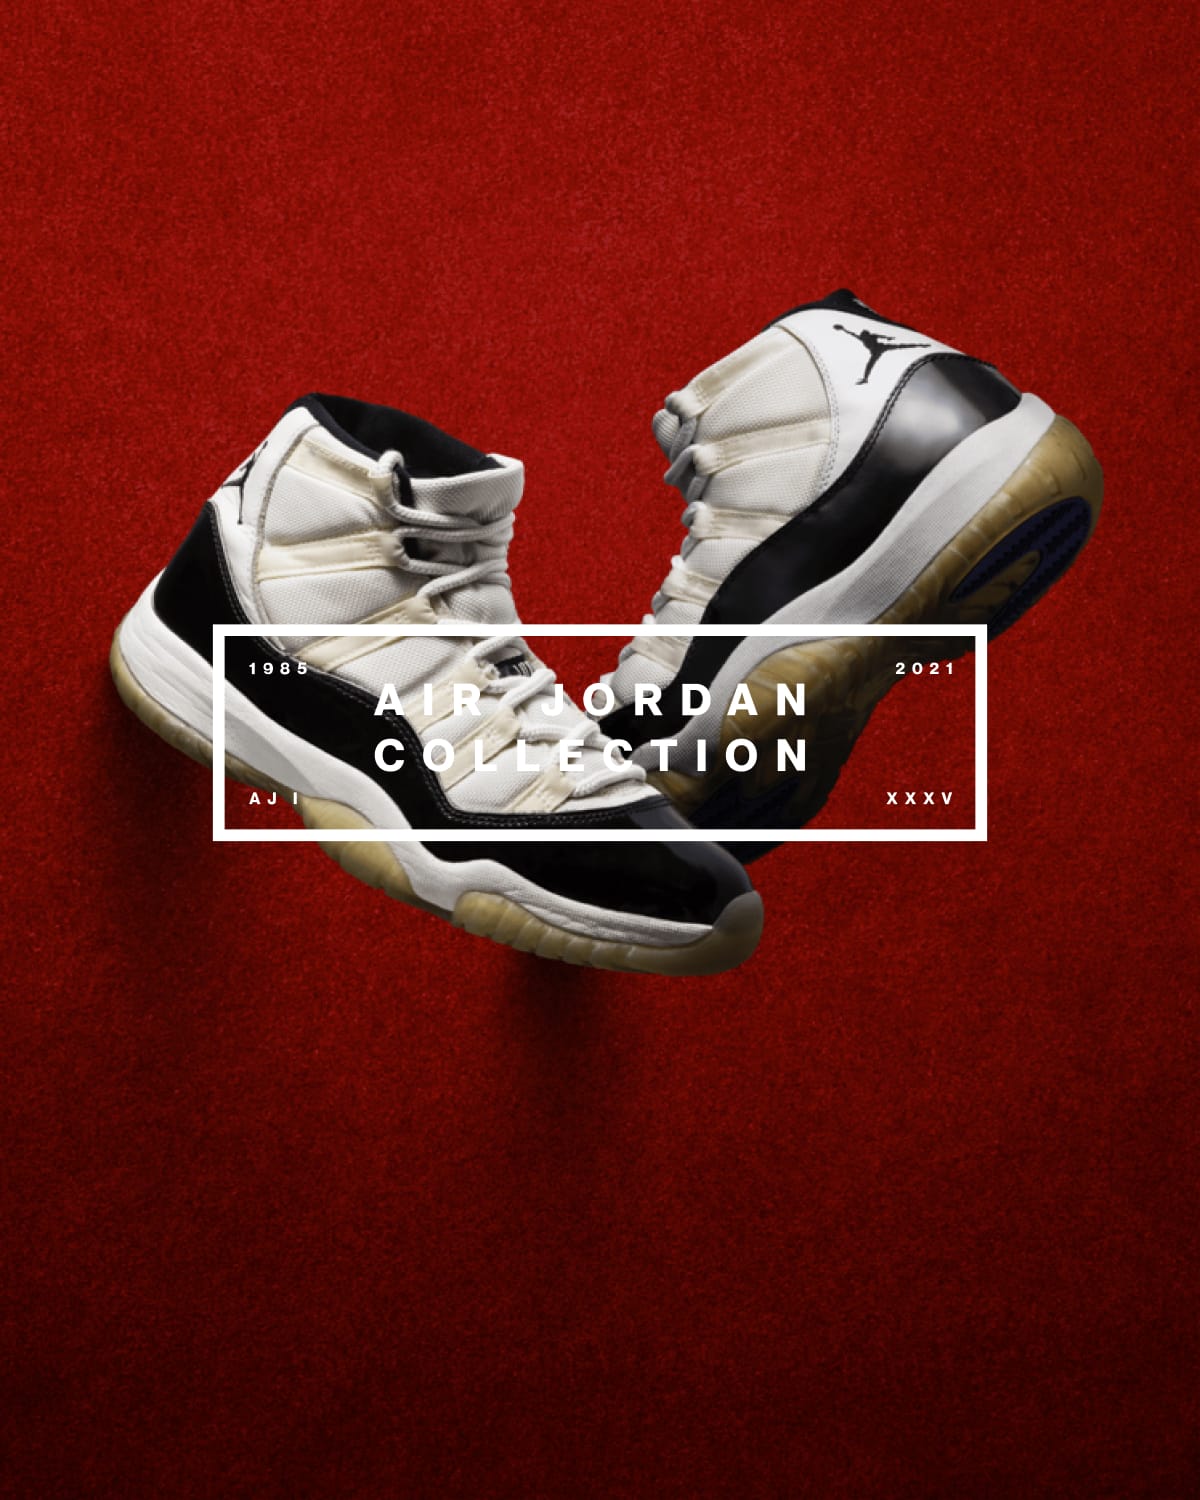 roble Contribución Ordenanza del gobierno Jordan. Nike.com